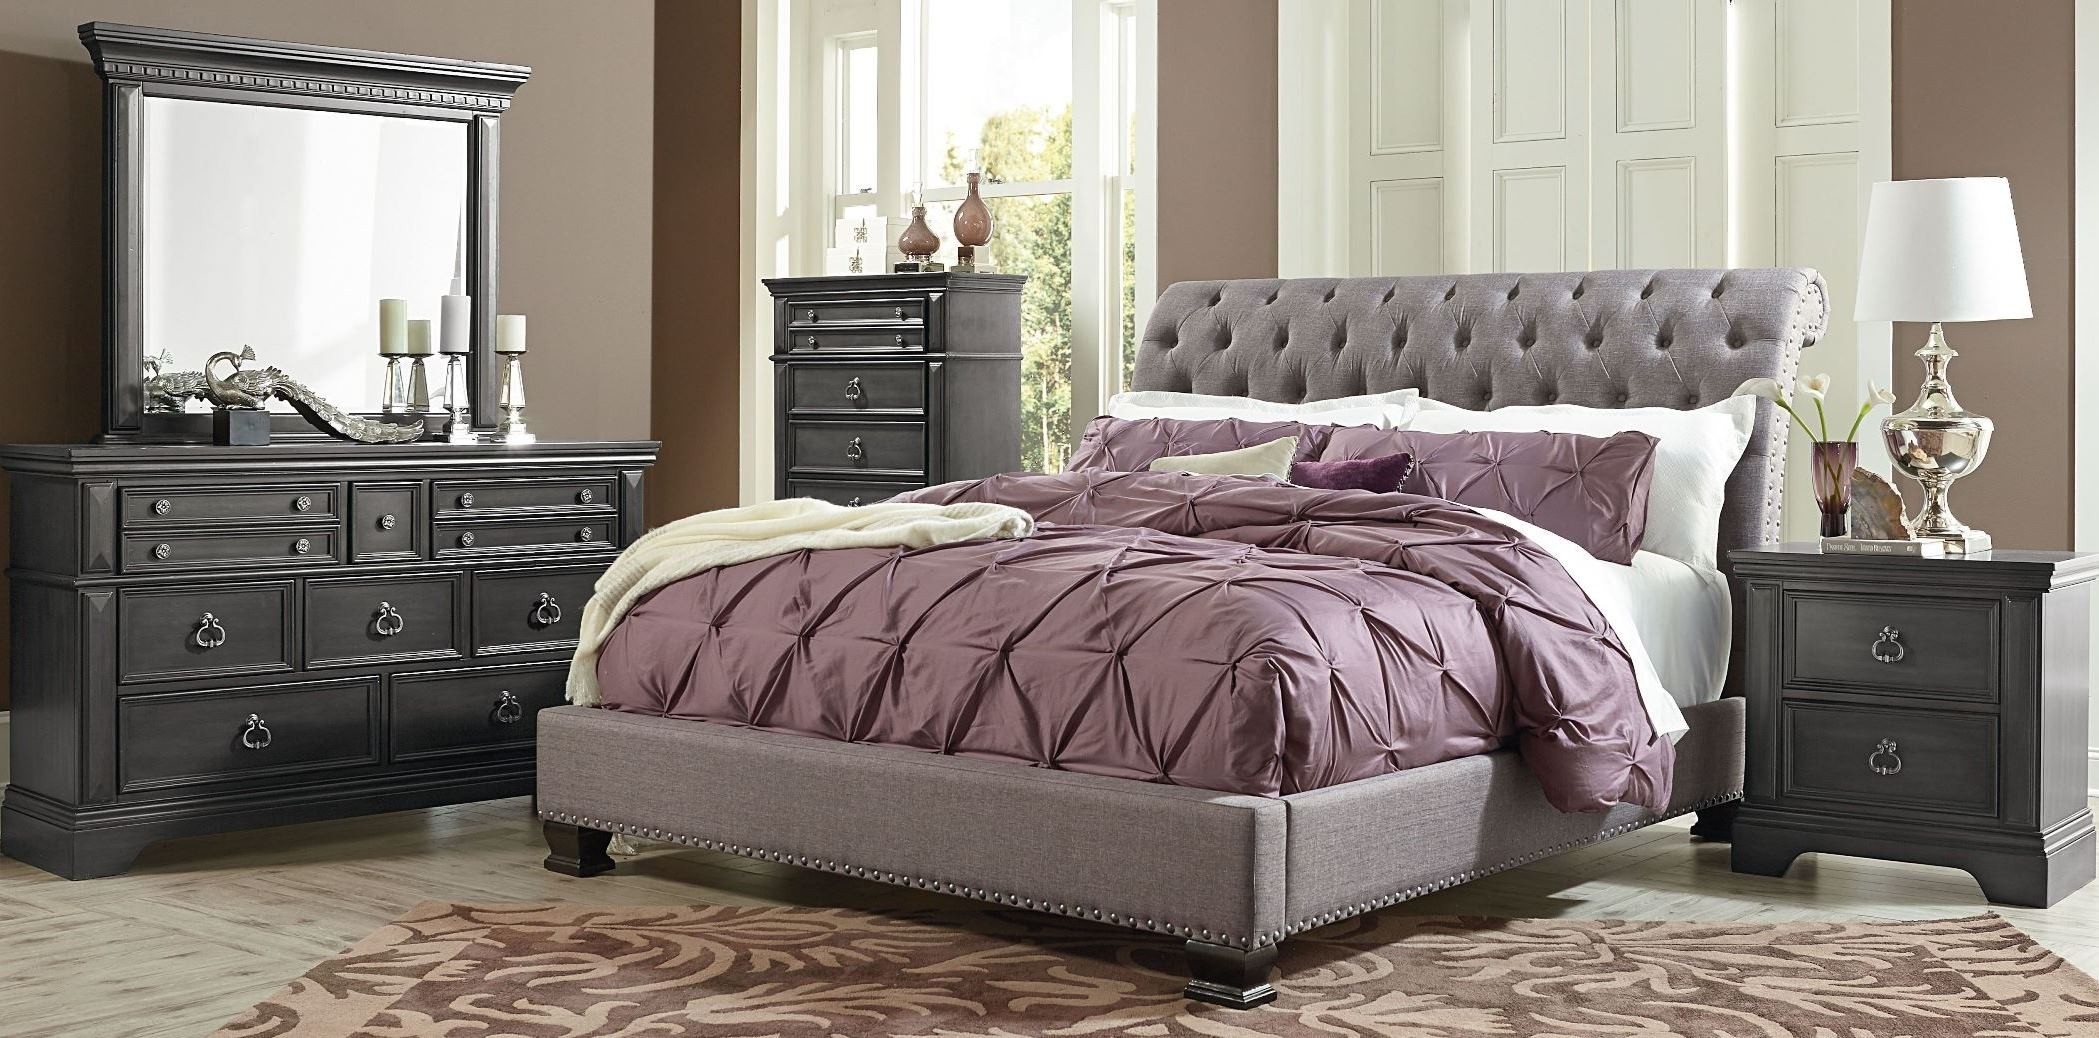 Garrison soft grey upholstered bedroom set from standard